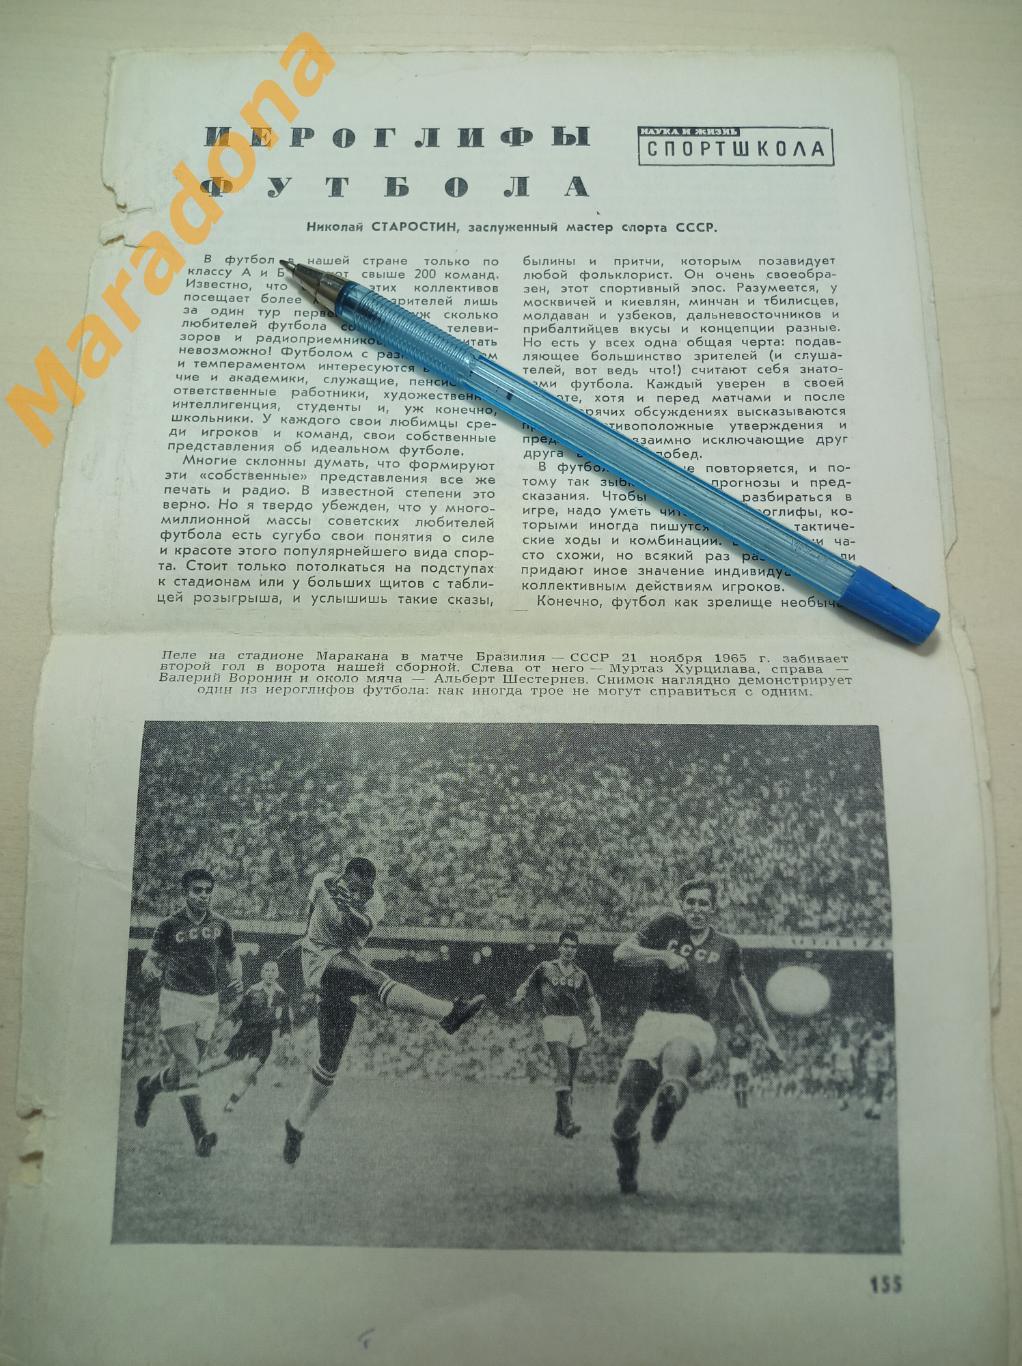 Вырезки Наука и Жизнь Н.Старостин Иероглифы футбола + фото СССР-Бразилия 1965